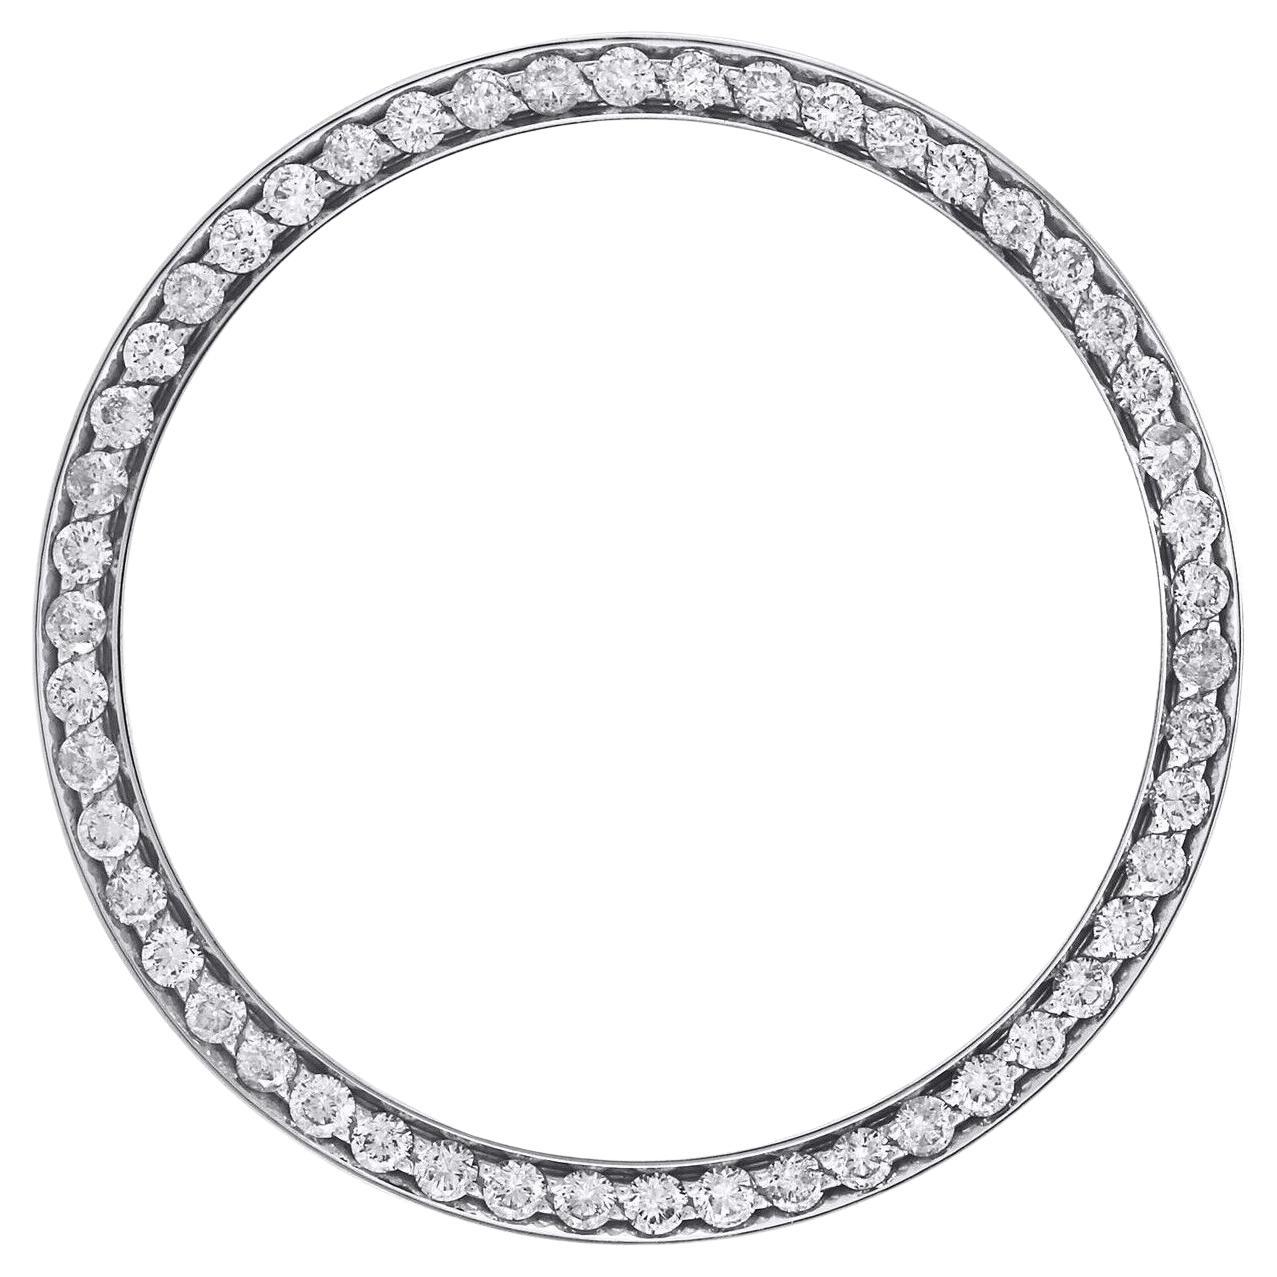 Maßgefertigte 1 1/3 Karat Diamant-Lünette für Rolex Datejust 36mm Edelstahl-Uhr mit Lünette, geschliffen, geschliffen